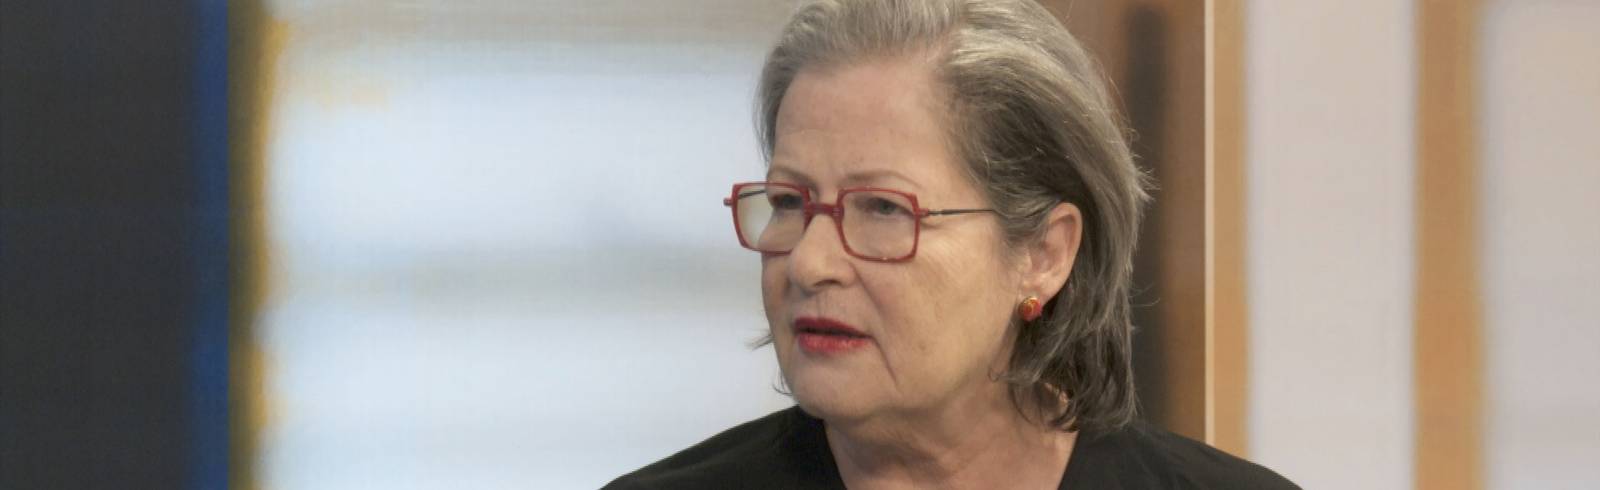 "Oma gegen Rechts" - Susanne Scholl im Interview